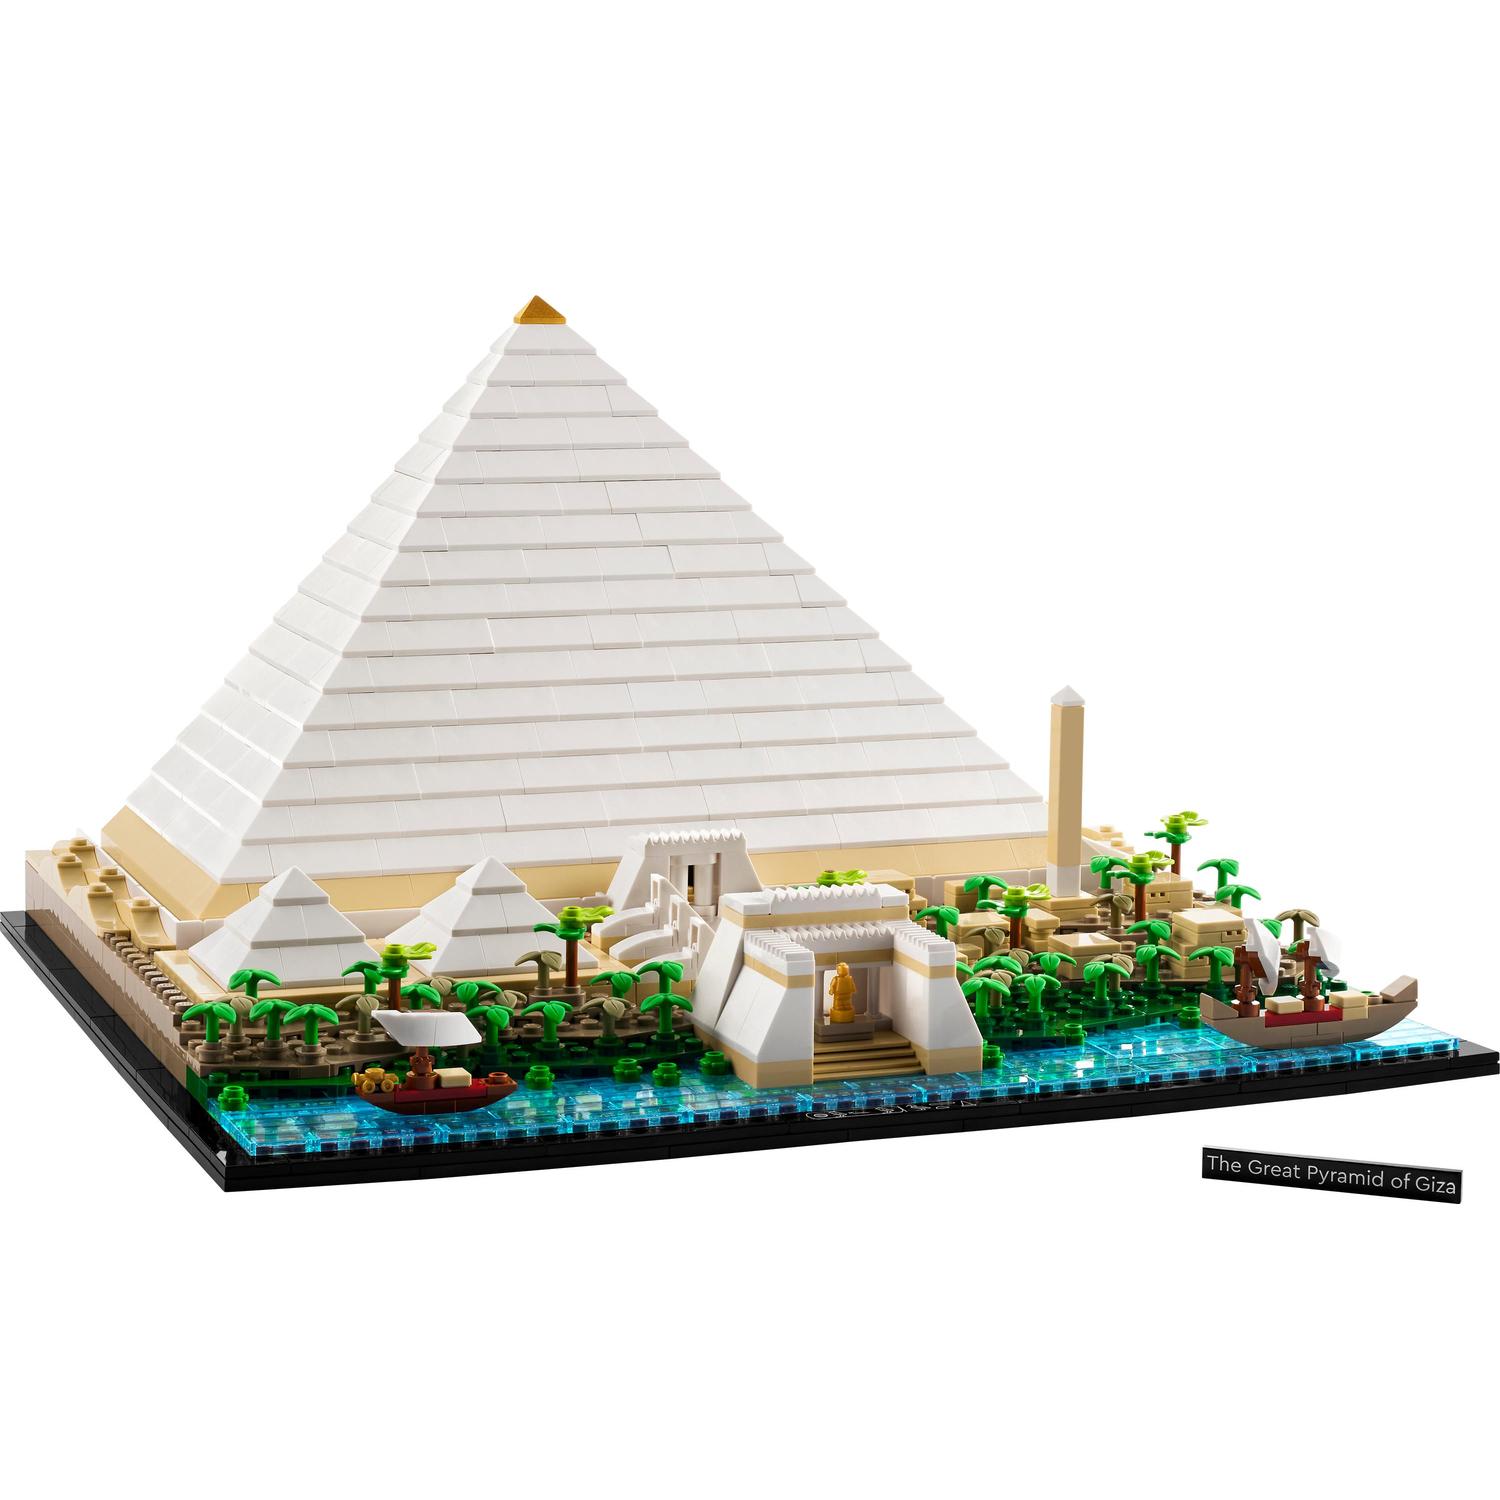 Velká pyramida v Gíze